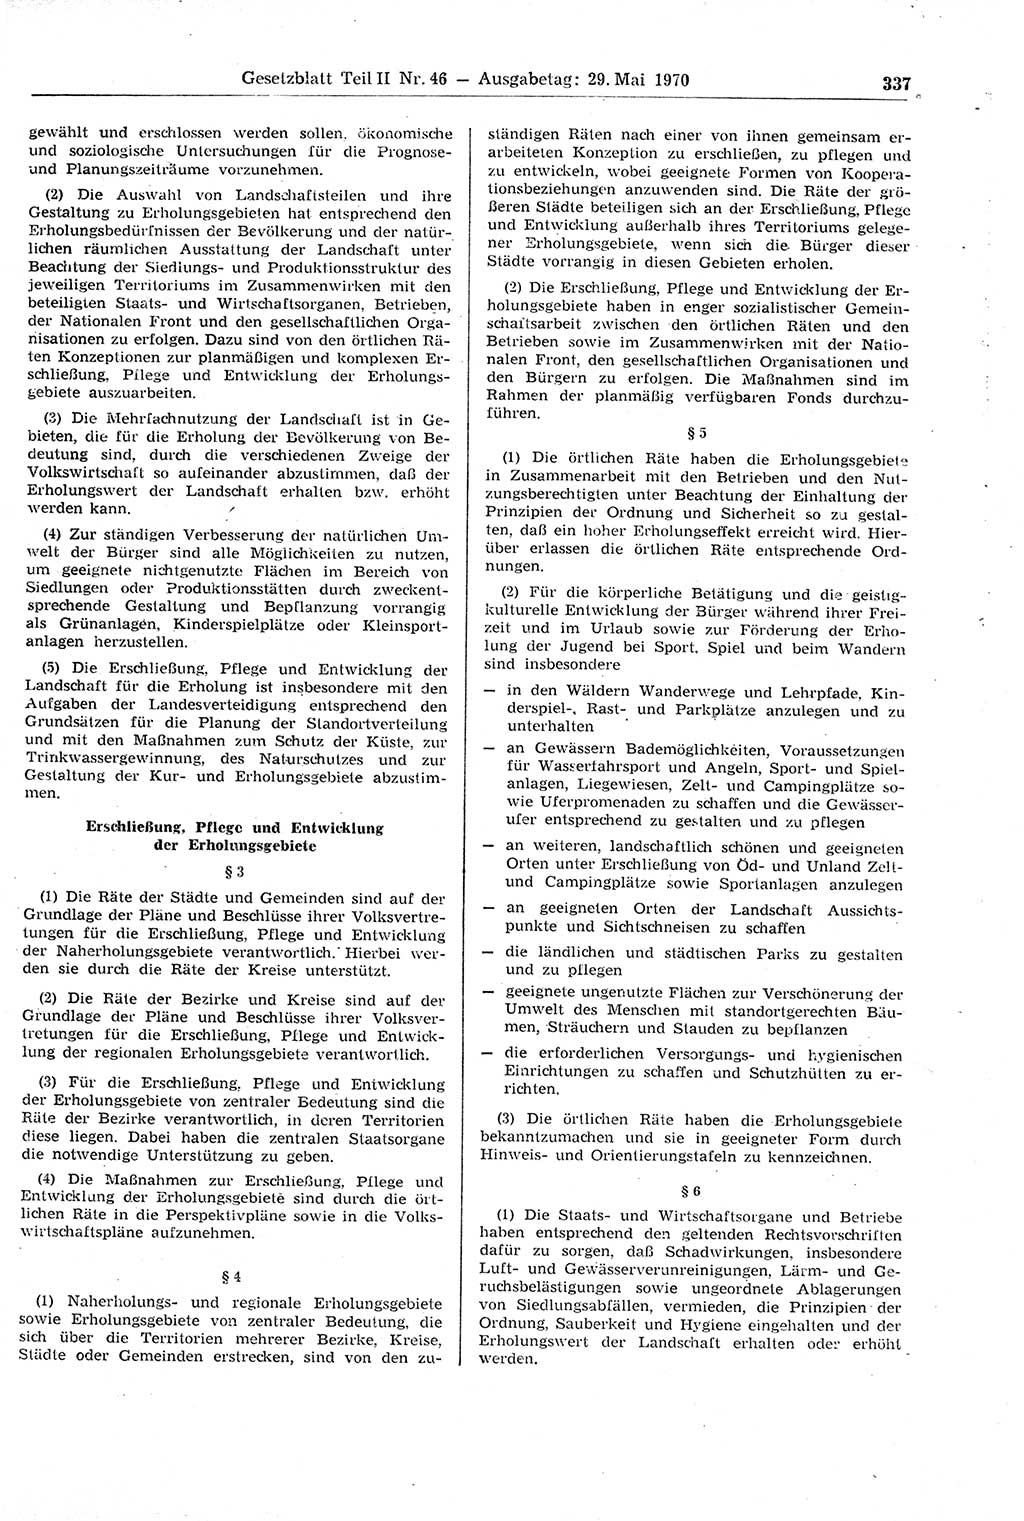 Gesetzblatt (GBl.) der Deutschen Demokratischen Republik (DDR) Teil ⅠⅠ 1970, Seite 337 (GBl. DDR ⅠⅠ 1970, S. 337)